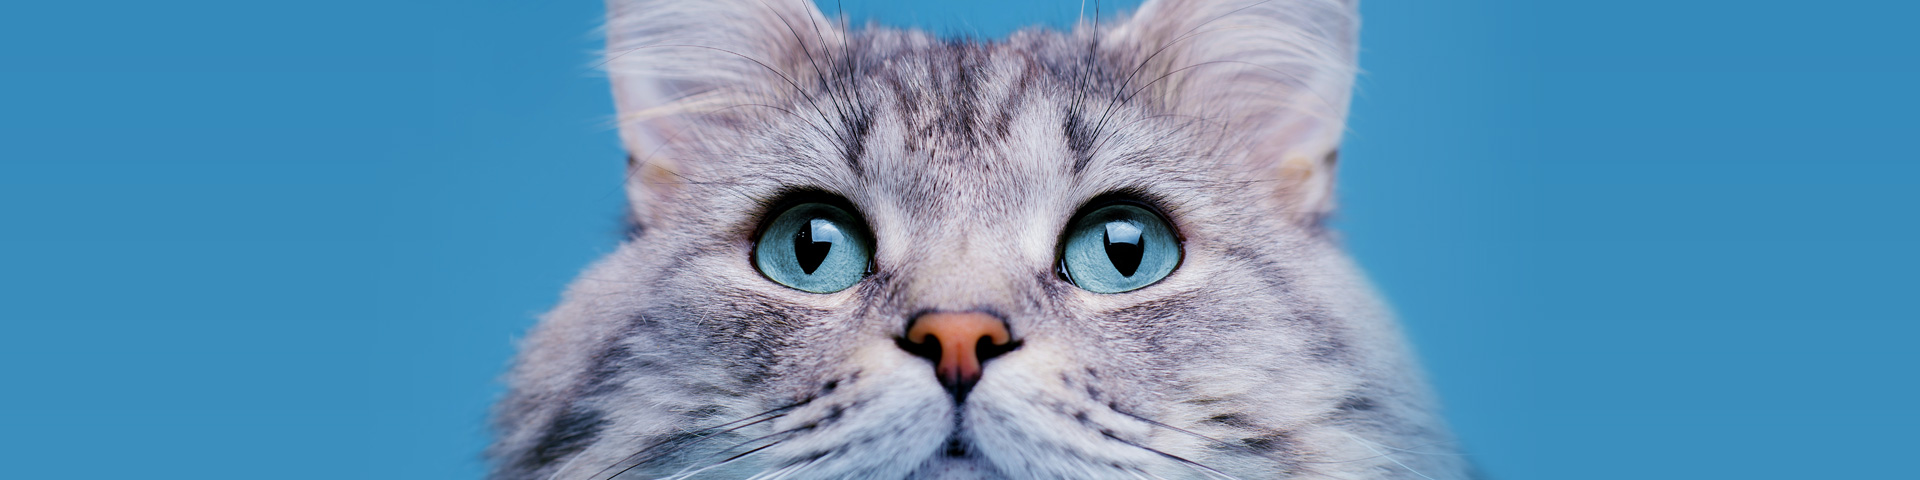 centro médico veterinário santo chico gato olhos azuis